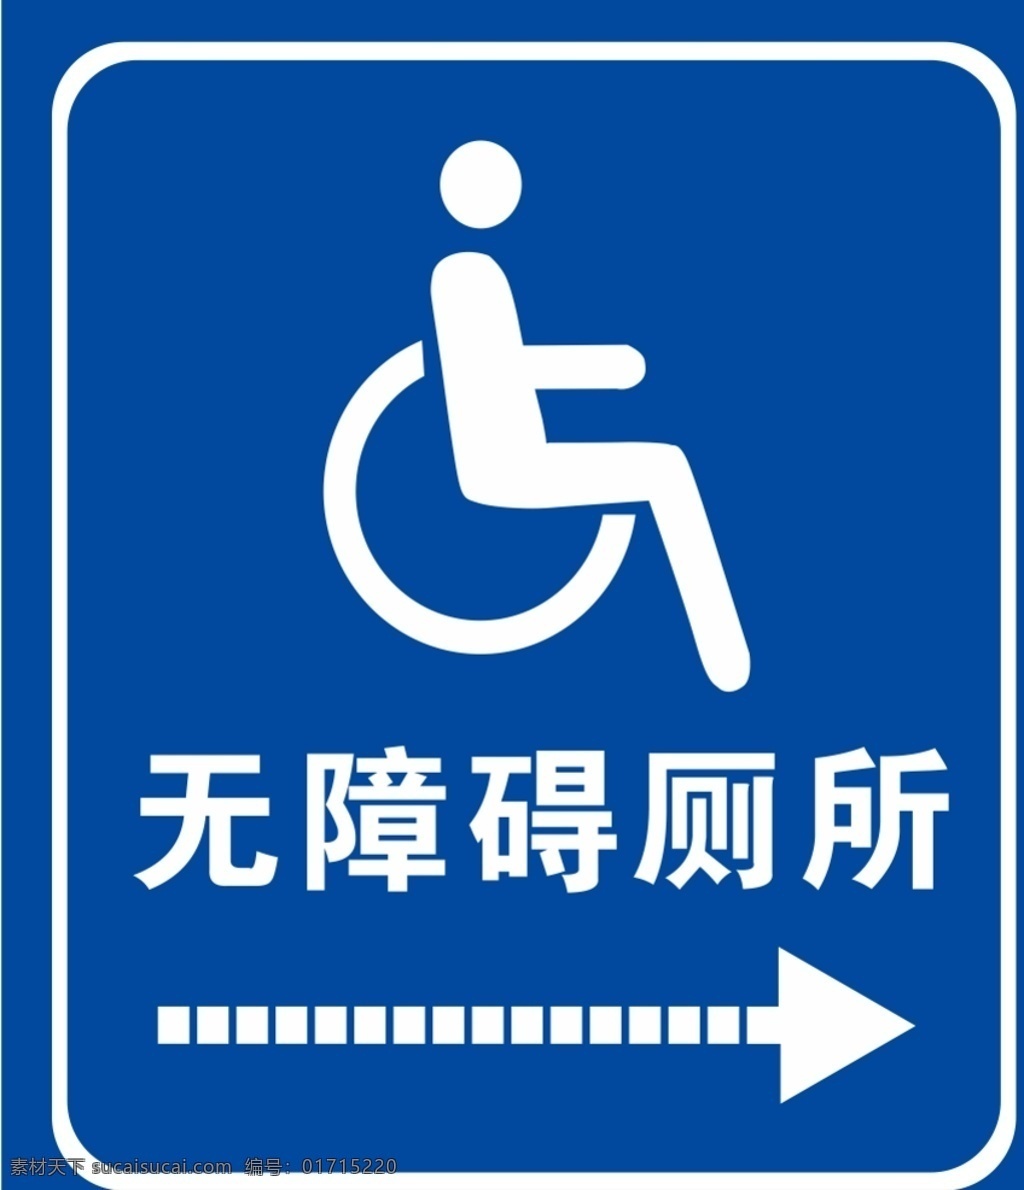 无障碍 洗手间 无障碍洗手间 无障碍洗厕所 无障碍标识 残疾人 轮椅